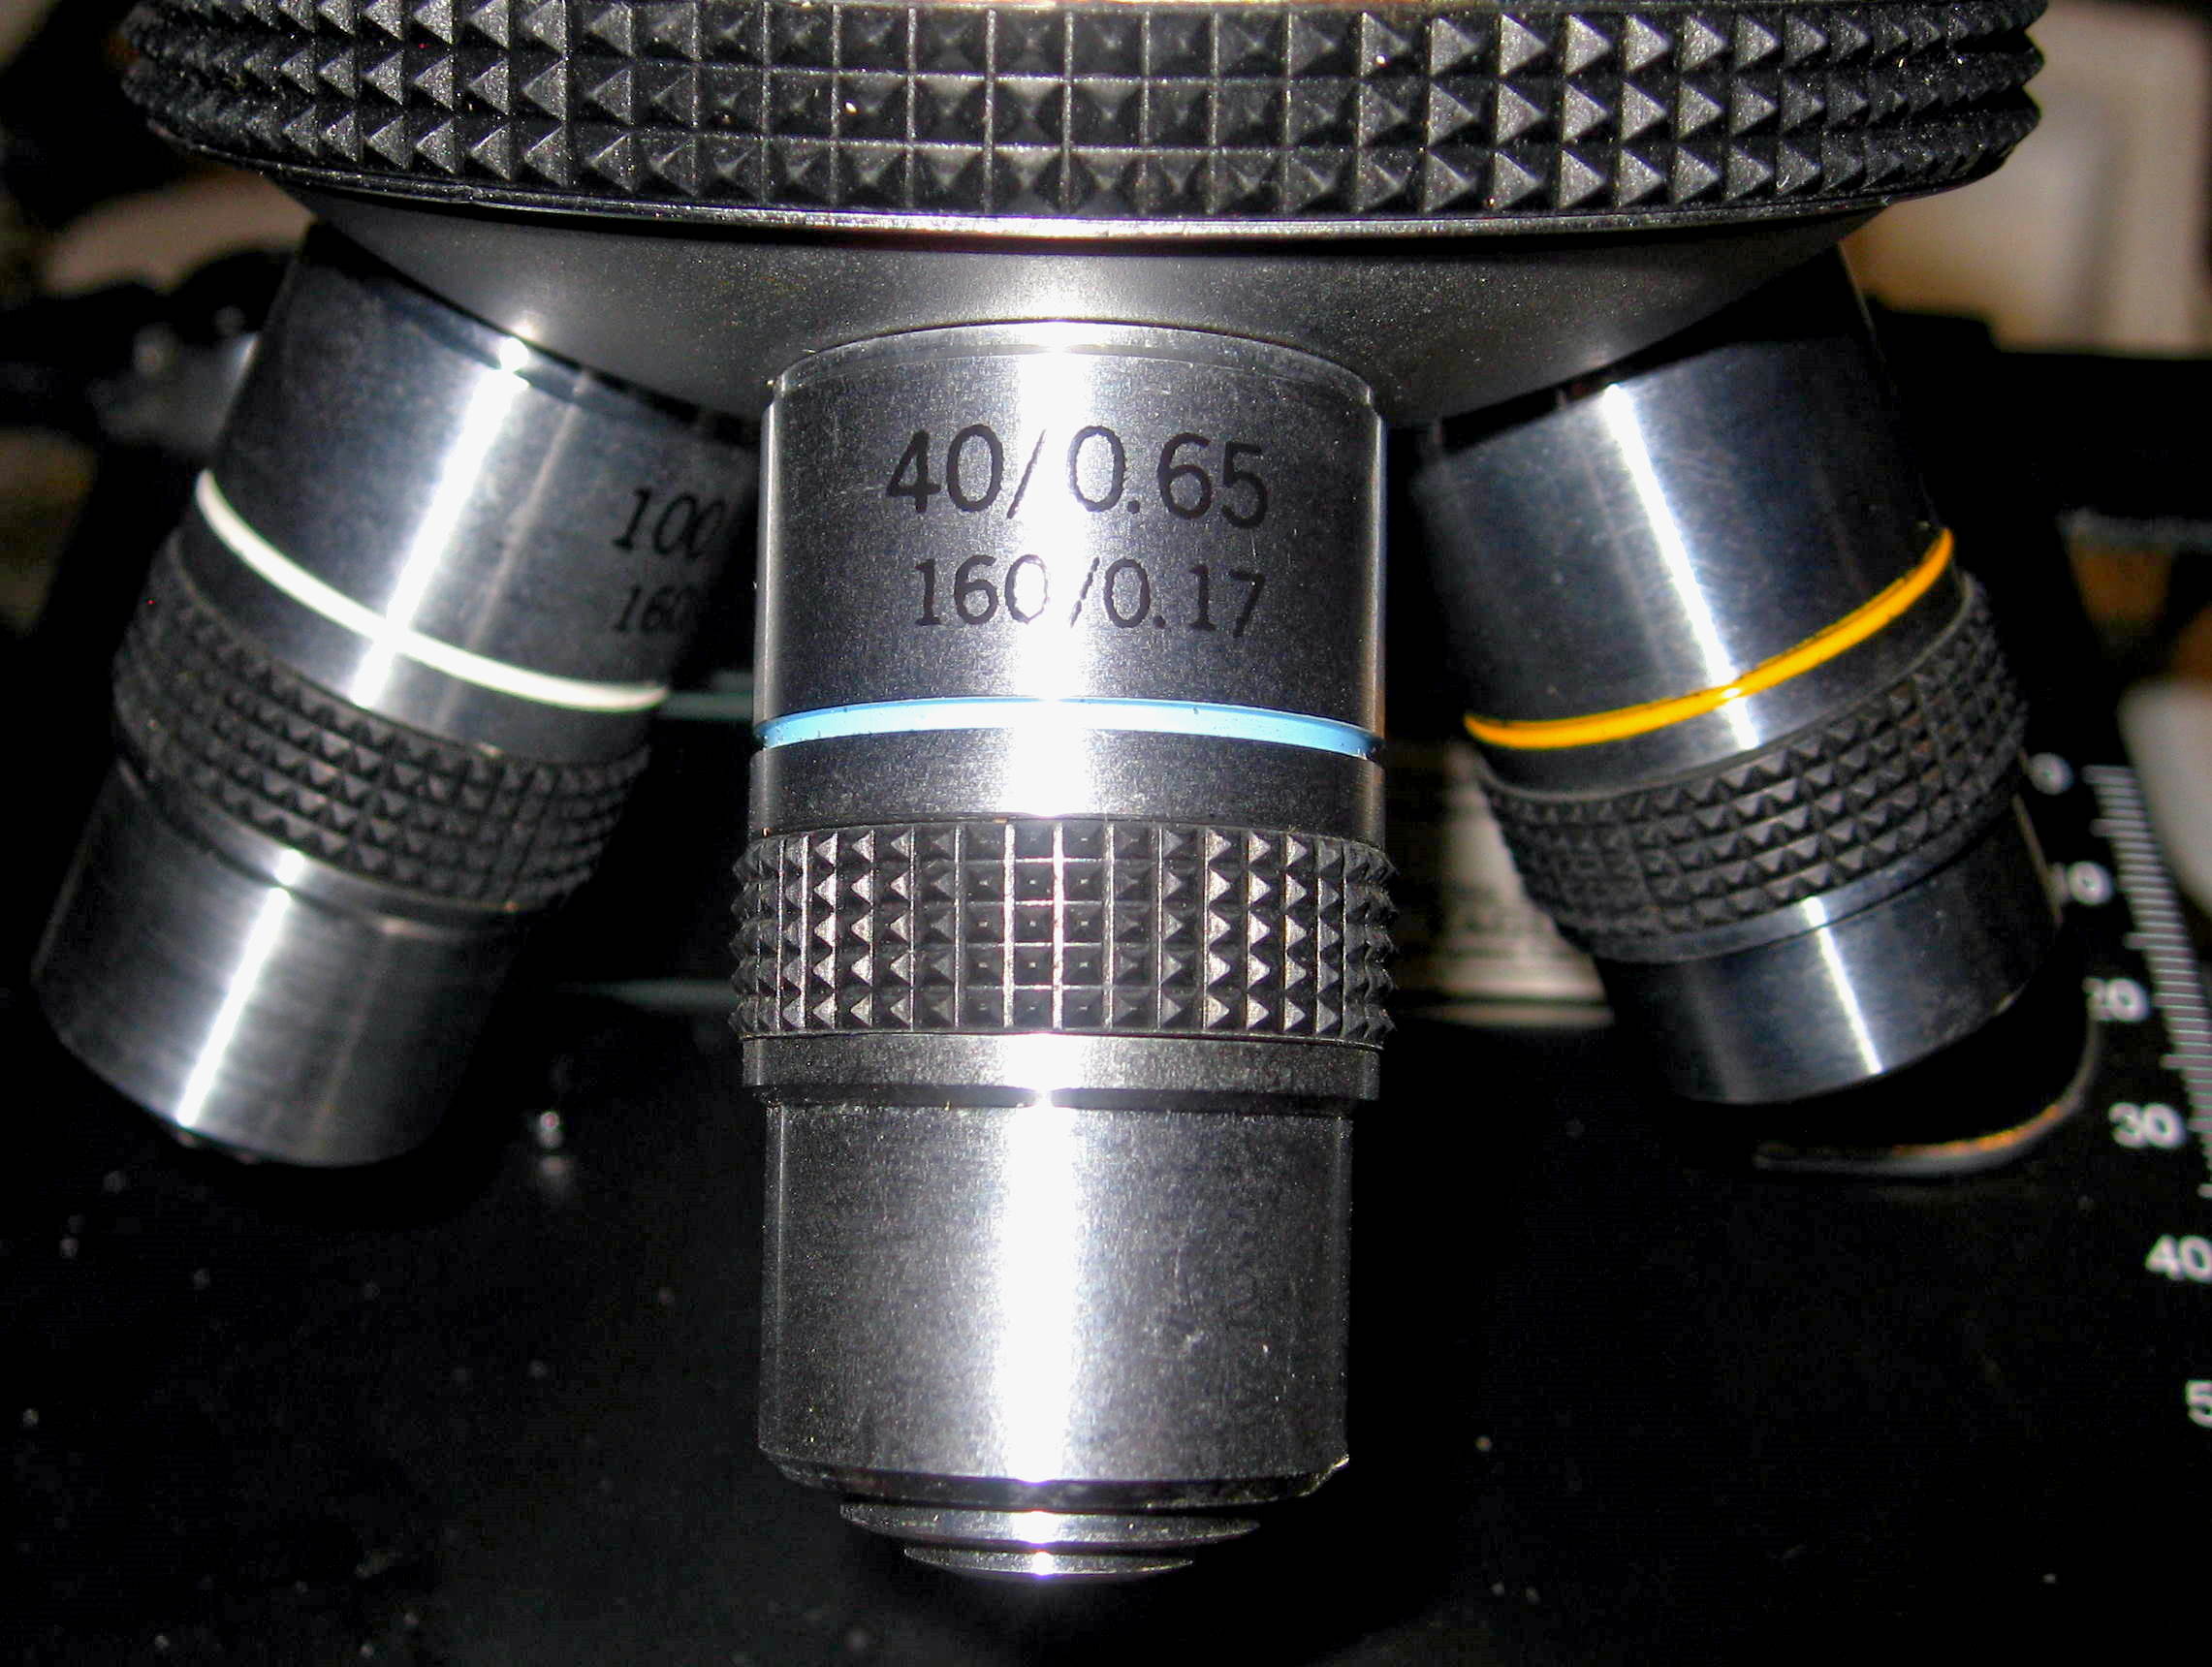 An objective lens